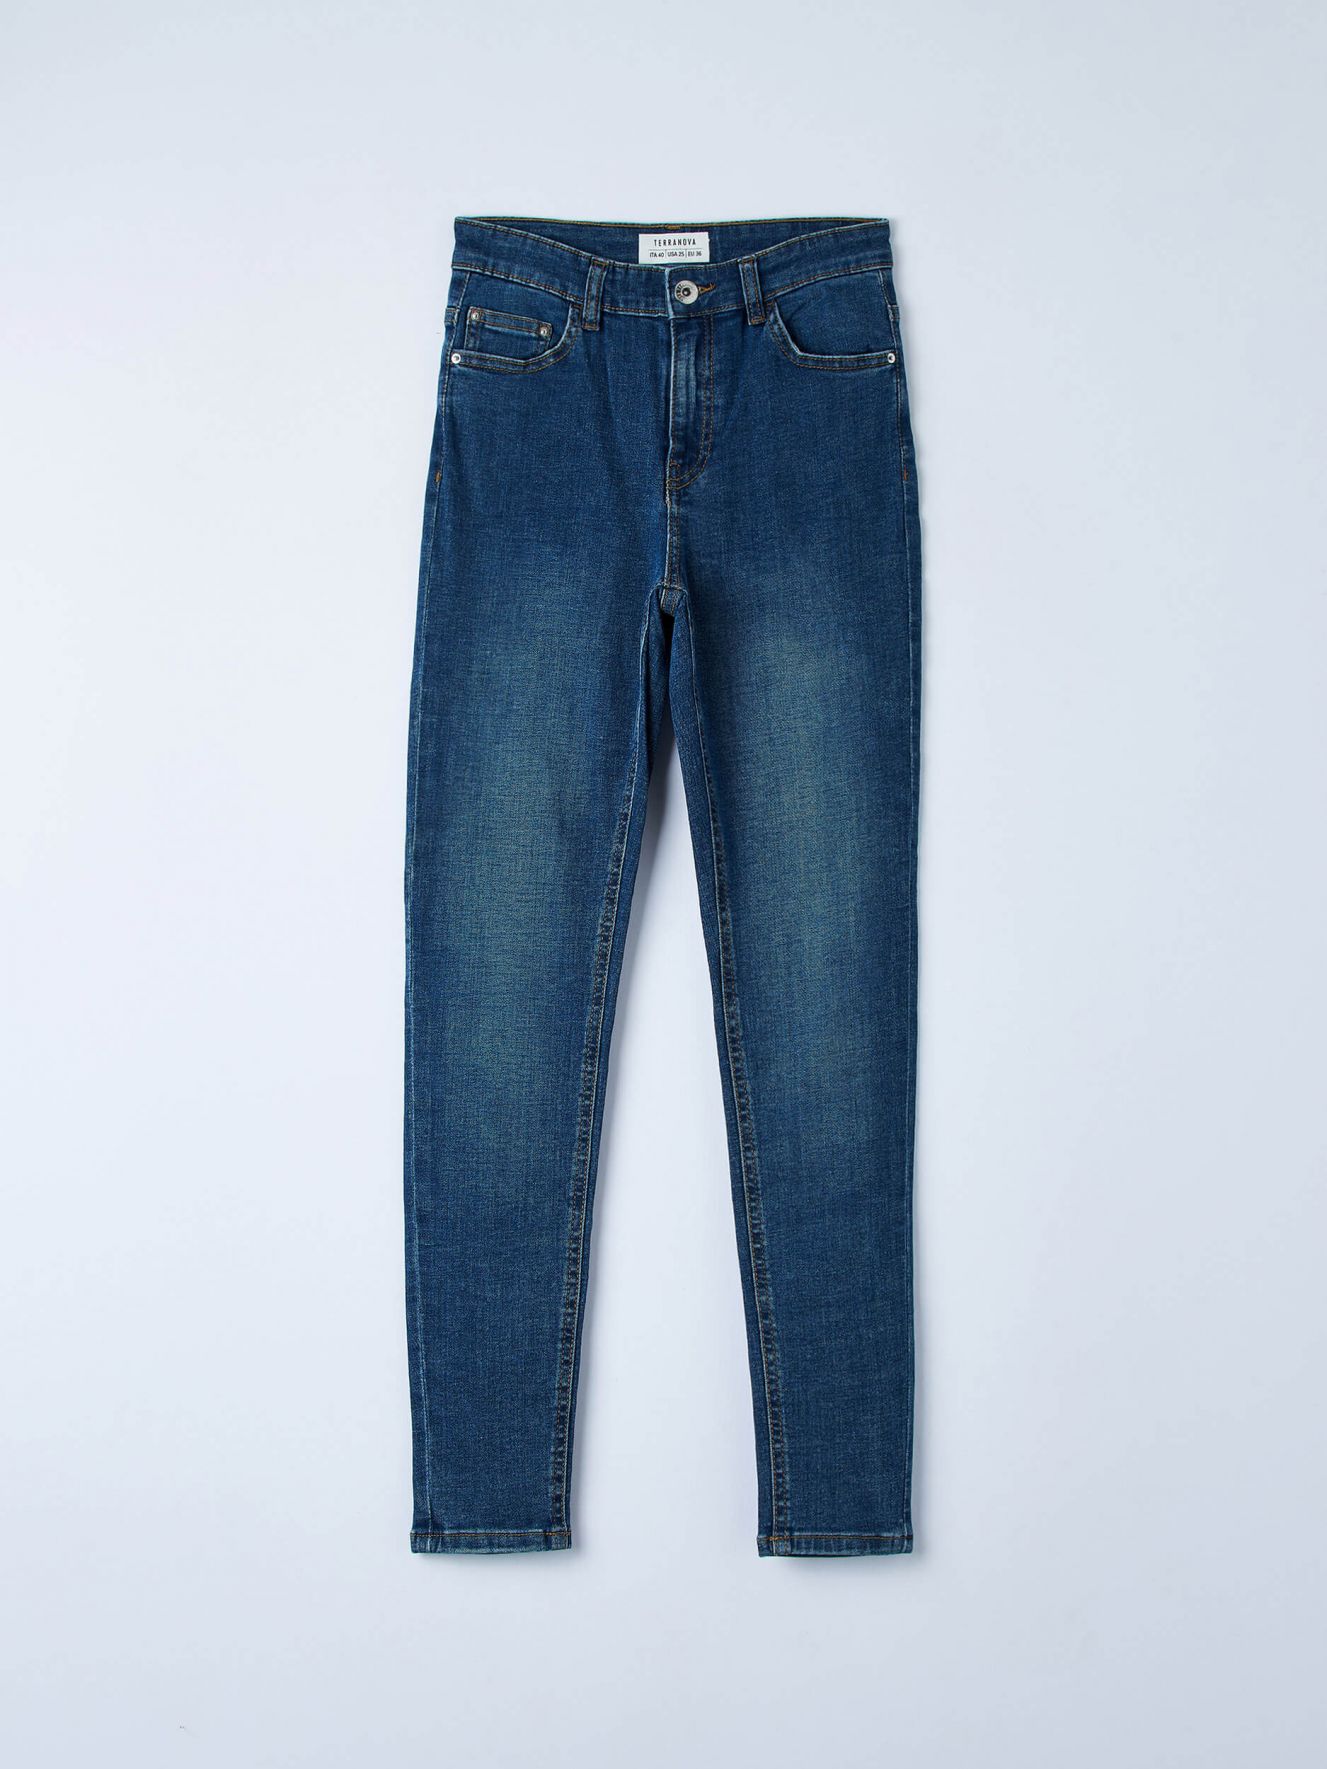 Femme Vêtements Jeans Jeans coupe droite Pantalon jean lavage noir Jean Great Plains en coloris Bleu 